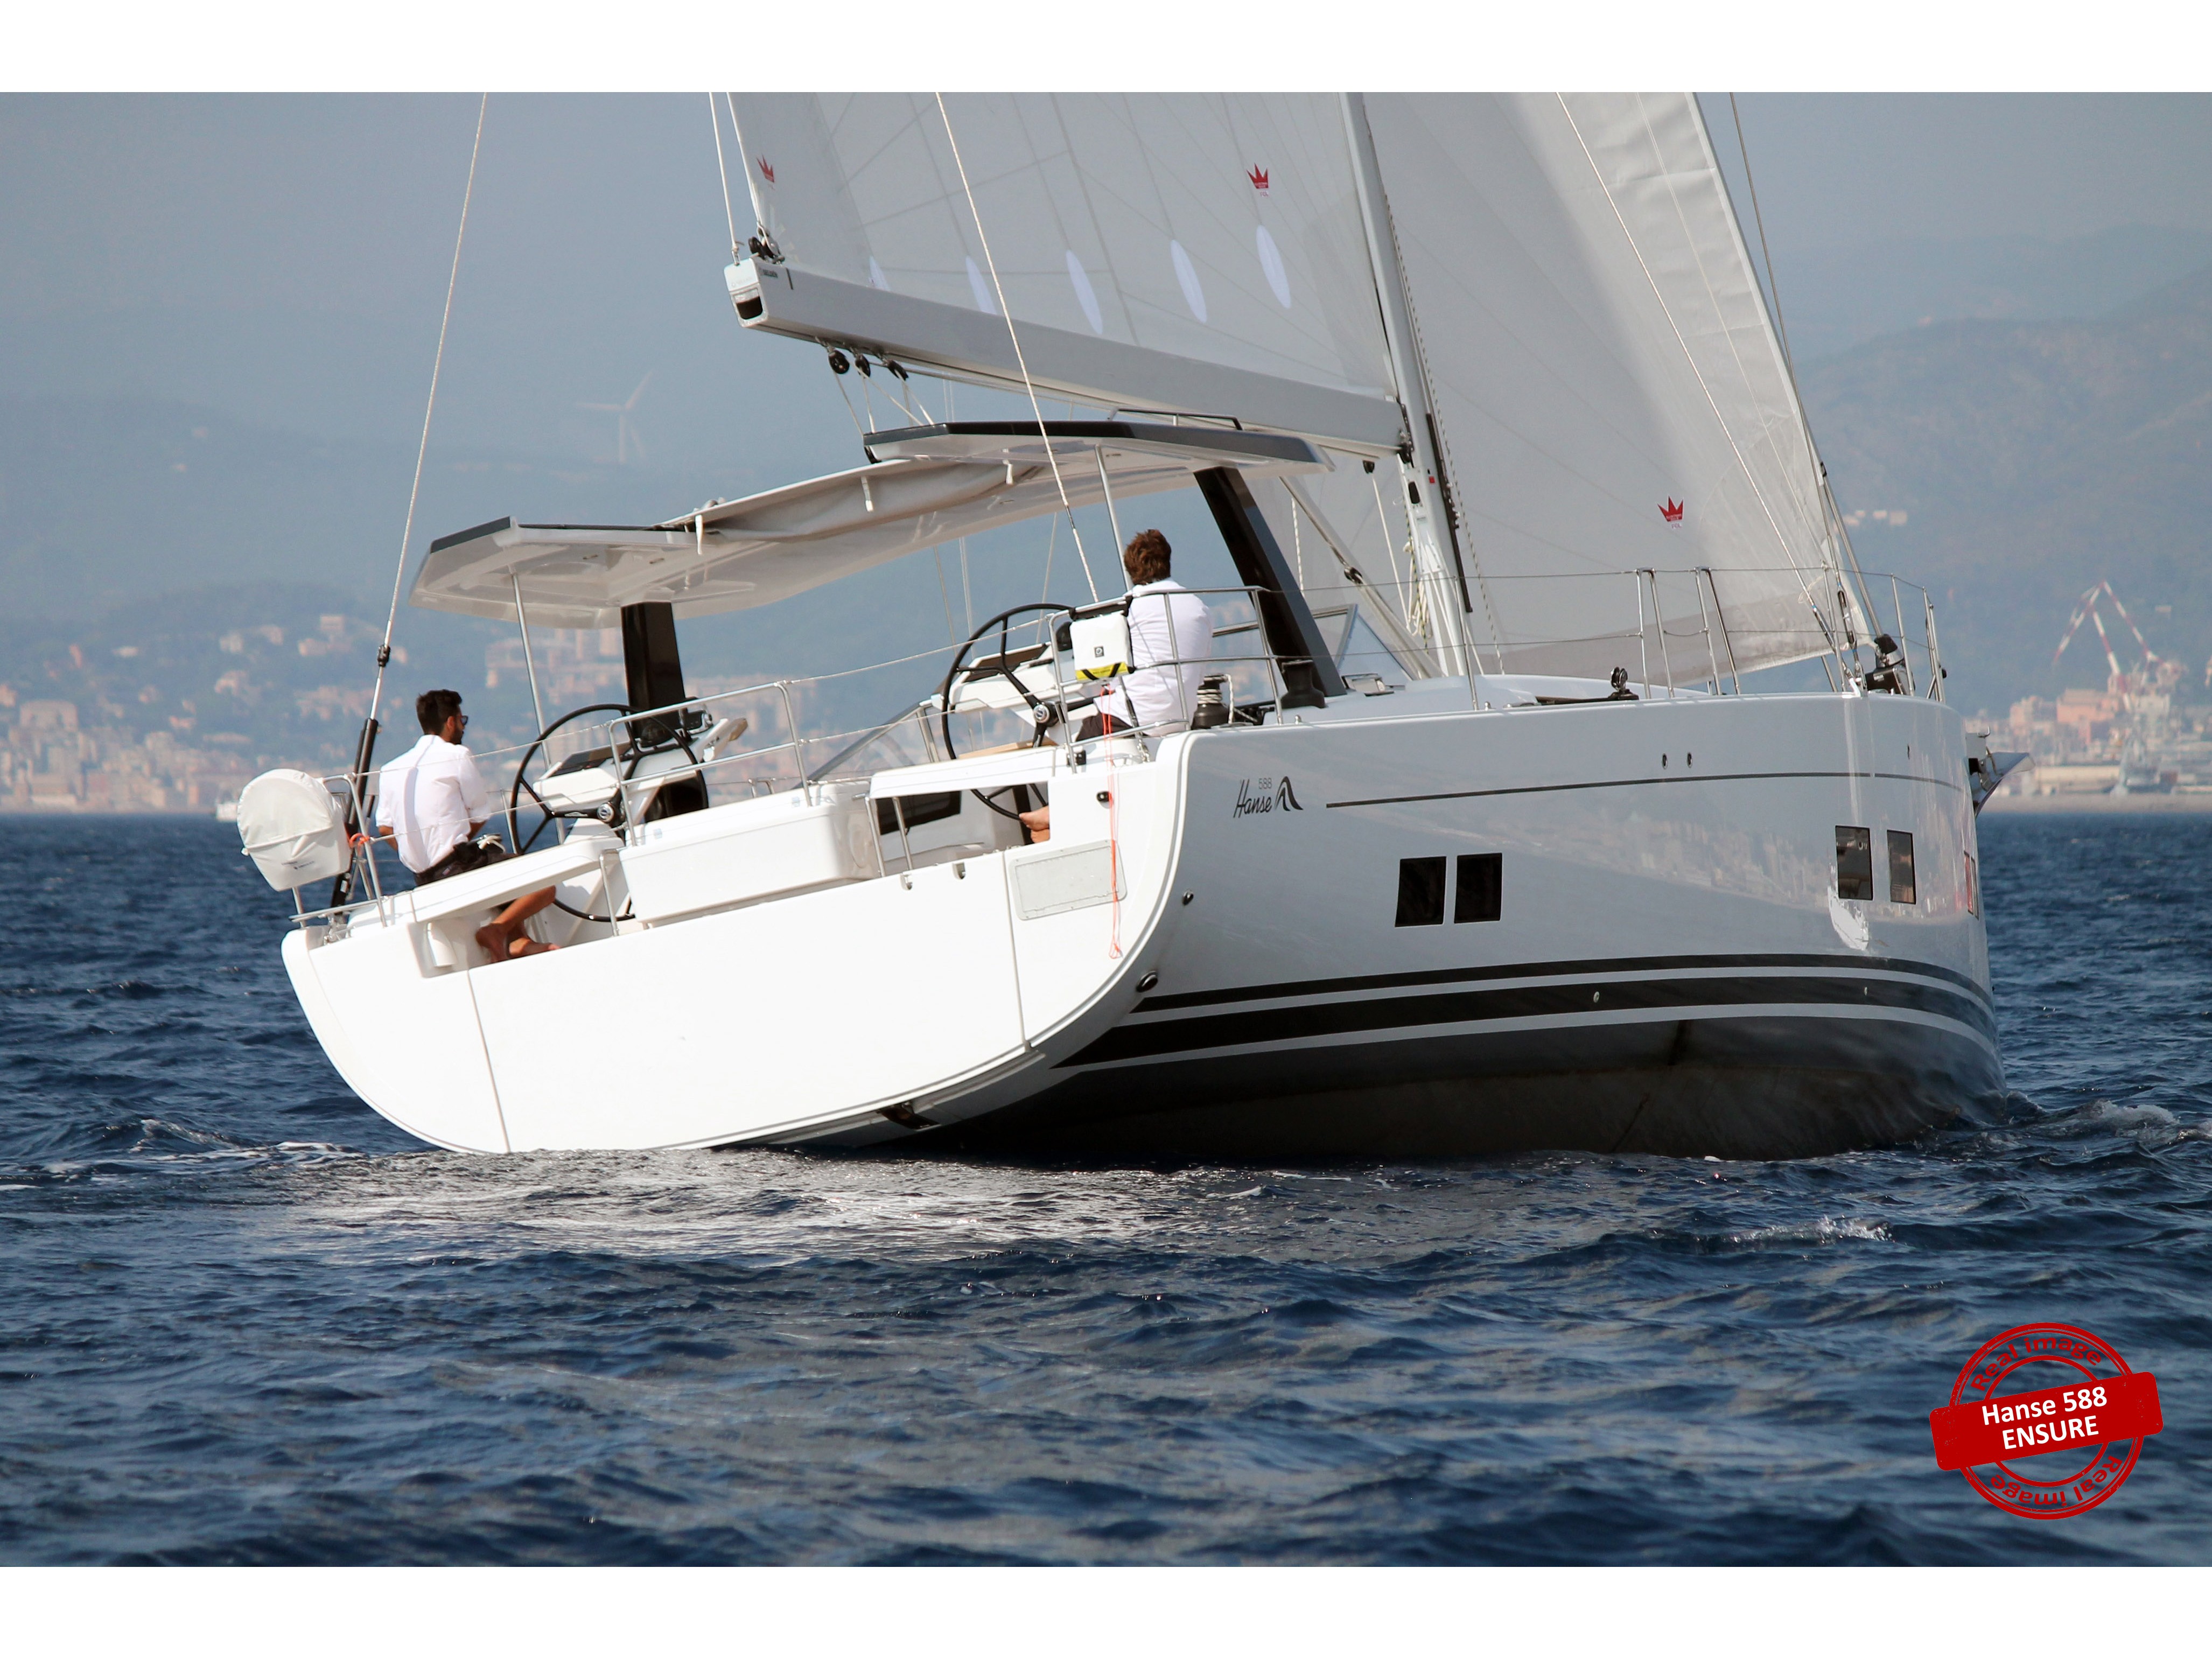 Hanse 588 - Yacht Charter Scarlino & Boat hire in Italy Tuscany Follonica Marina di Scarlino 1